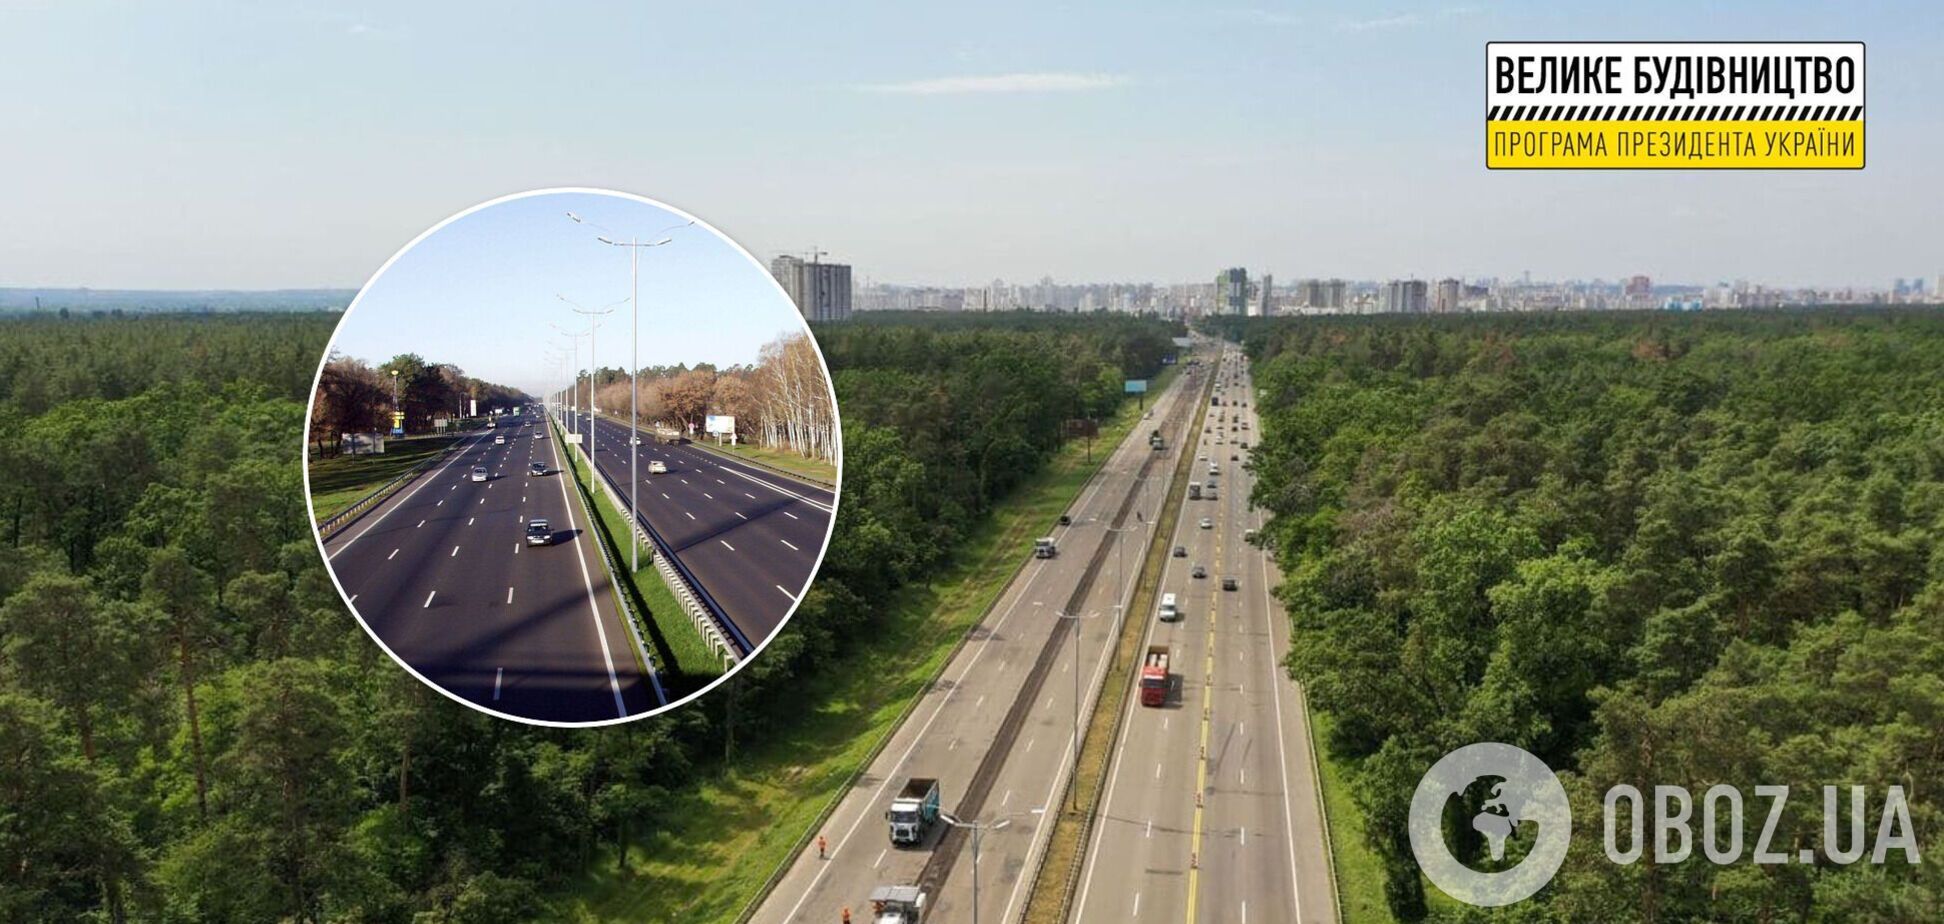 'Большая стройка': ремонт на трассе Киев – Борисполь завершился